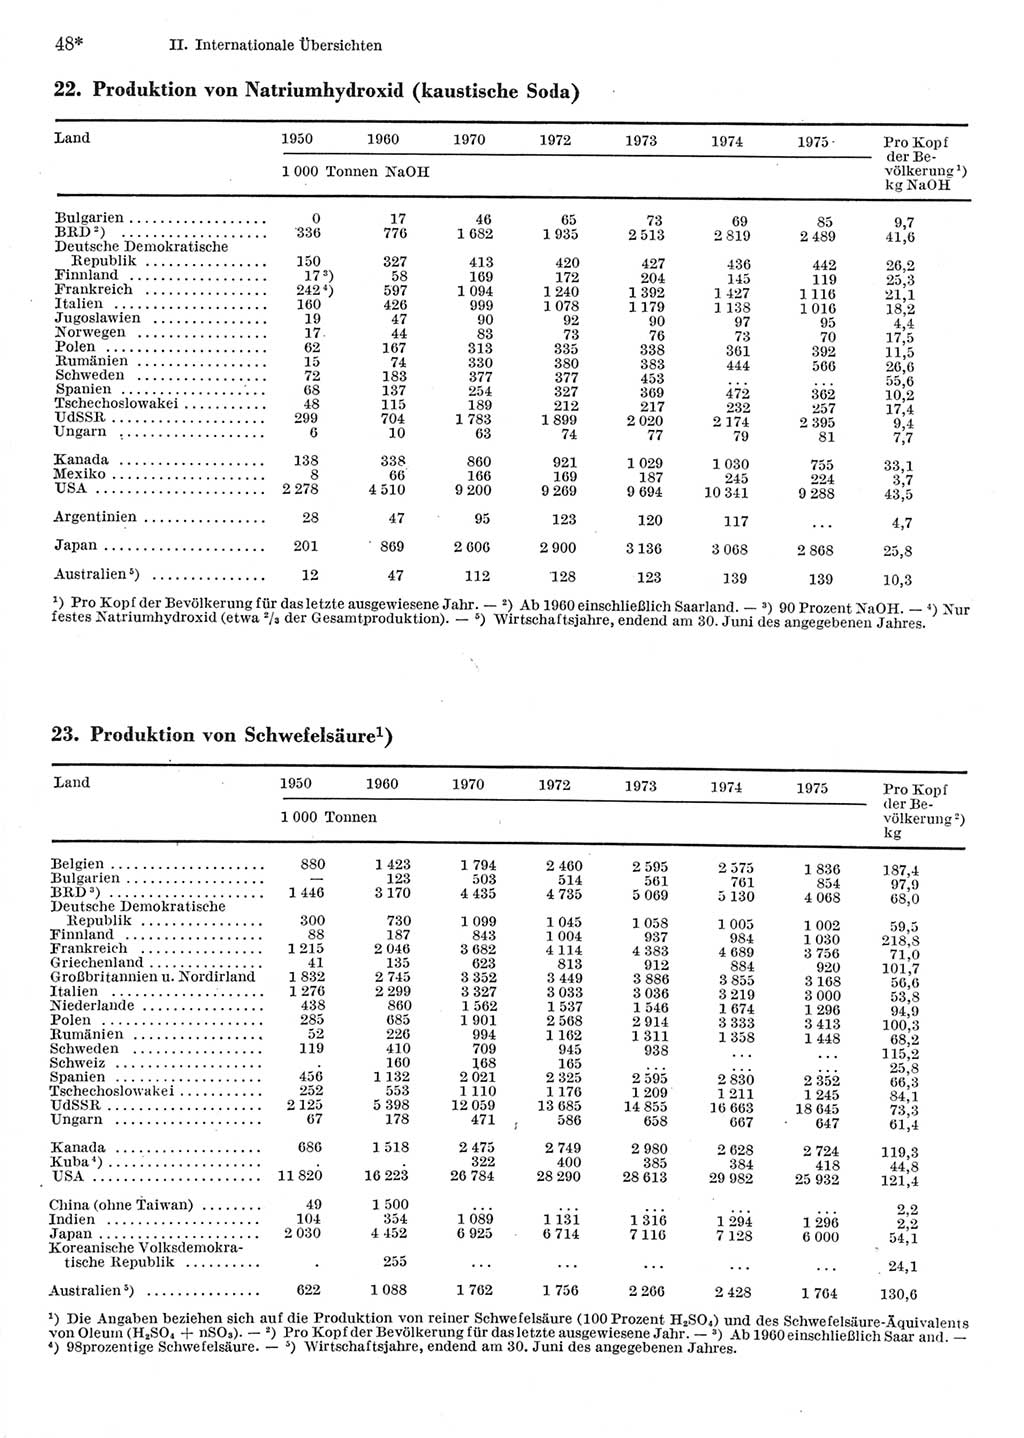 Statistisches Jahrbuch der Deutschen Demokratischen Republik (DDR) 1977, Seite 48 (Stat. Jb. DDR 1977, S. 48)